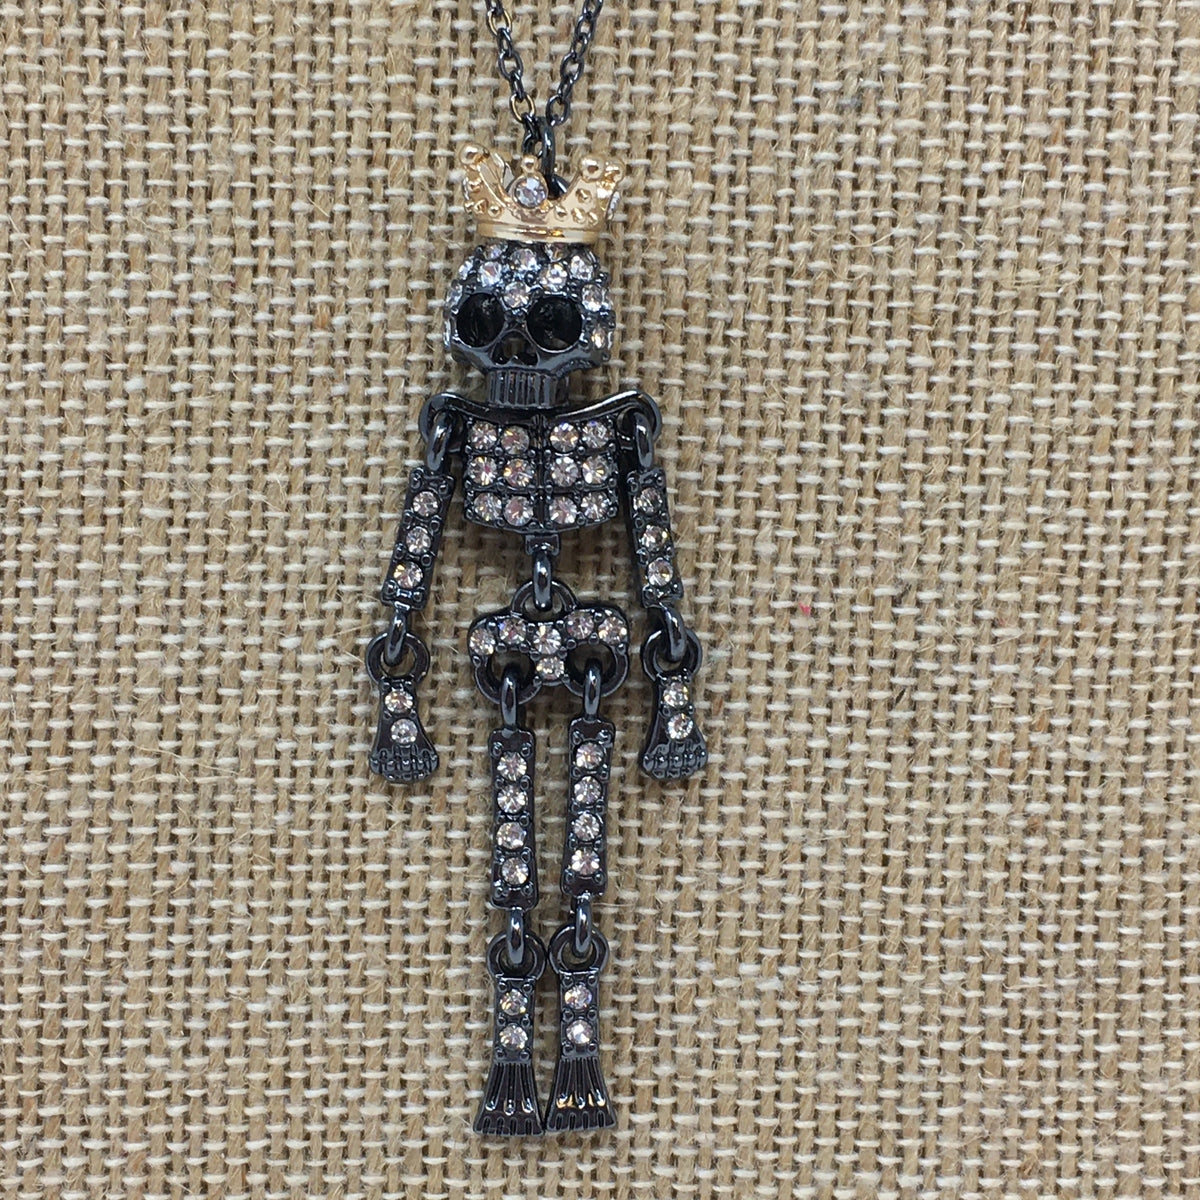 Crown Skeleton Dangle Necklace